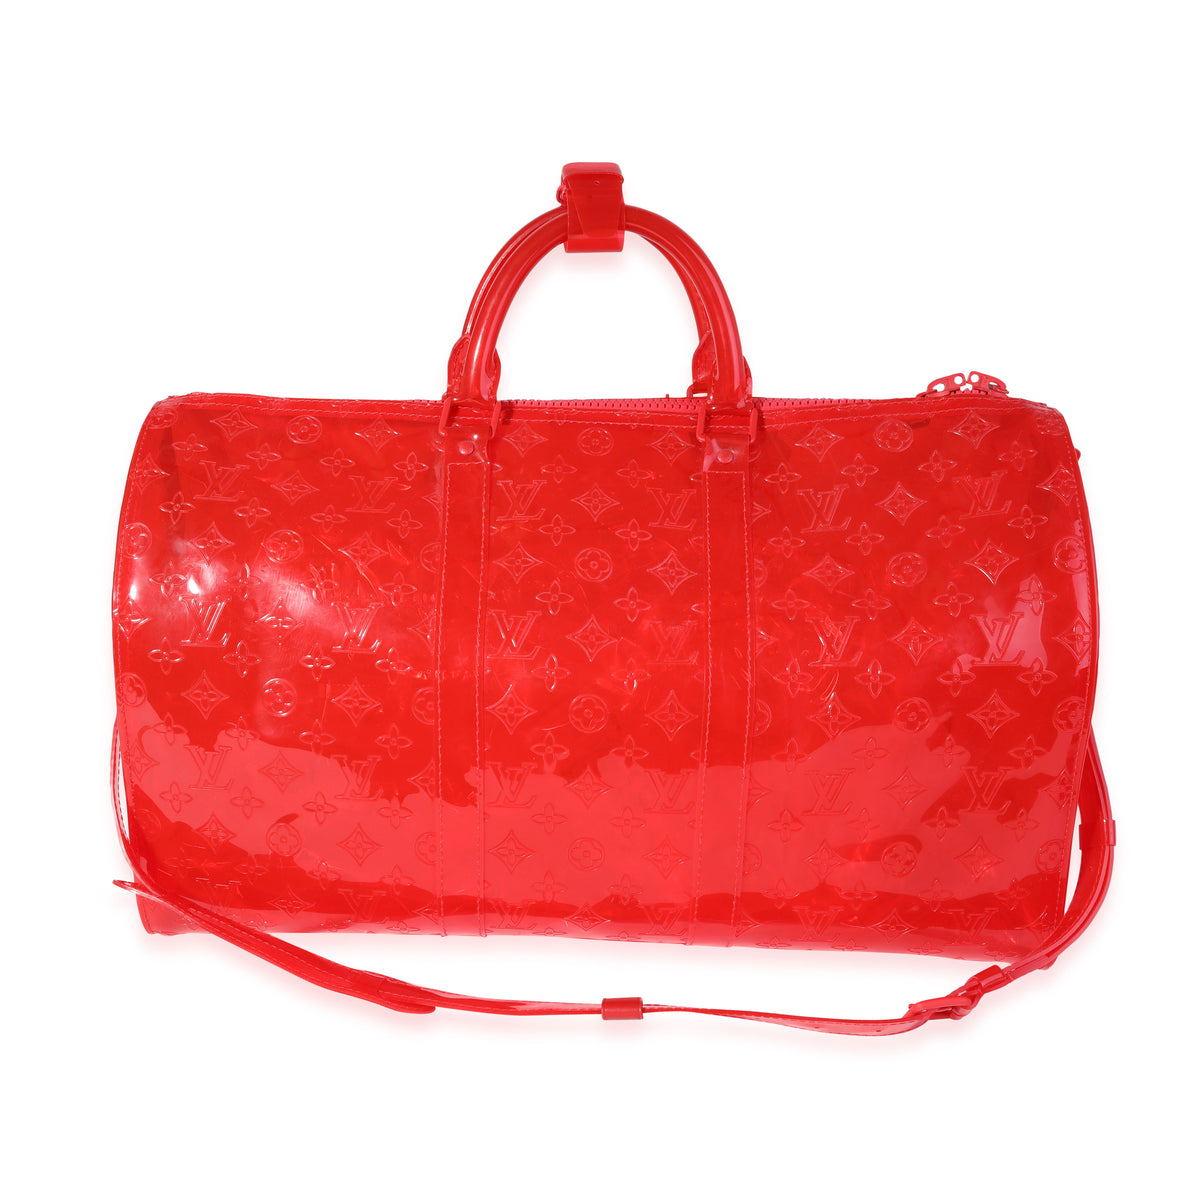 Louis Vuitton x Virgil Abloh Red Monogram PVC  Keepall Bandouliére 50